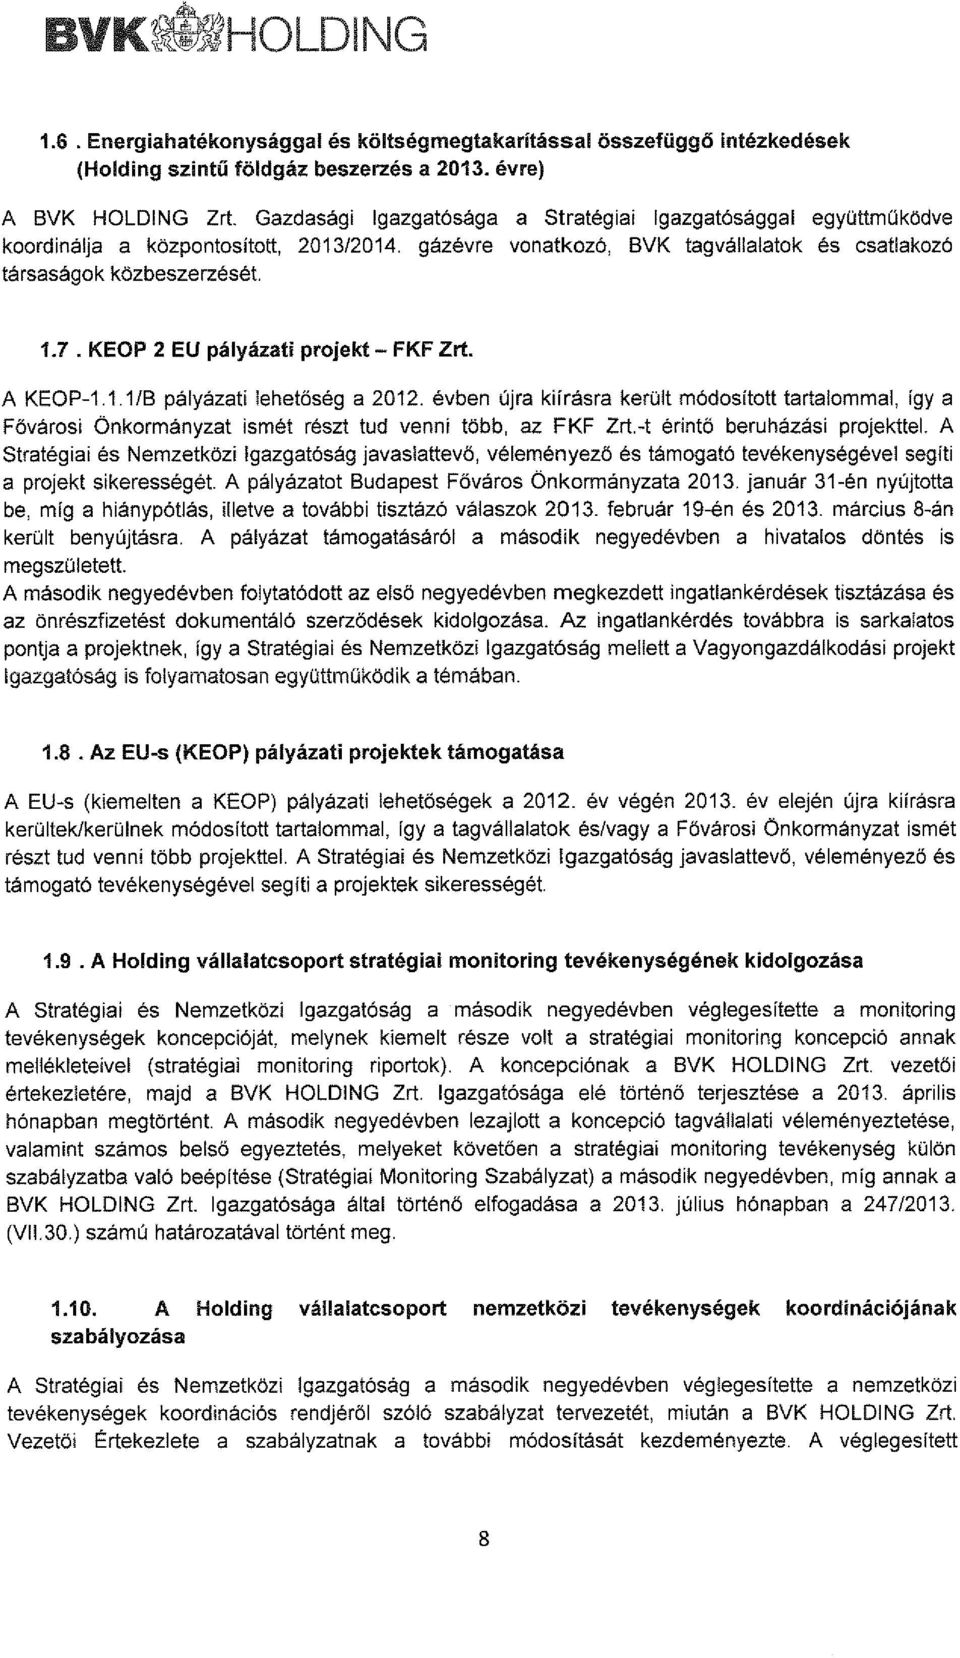 KEOP 2 EU pályázati projekt- FKF Zrt. A KEOP-1.1.1/B pályázati lehetőség a 2012. évben újra kiírásra került módosított tartalommal, így a Fávárosi Önkormányzat ismét részt tud venni több, az FKF Zrt.